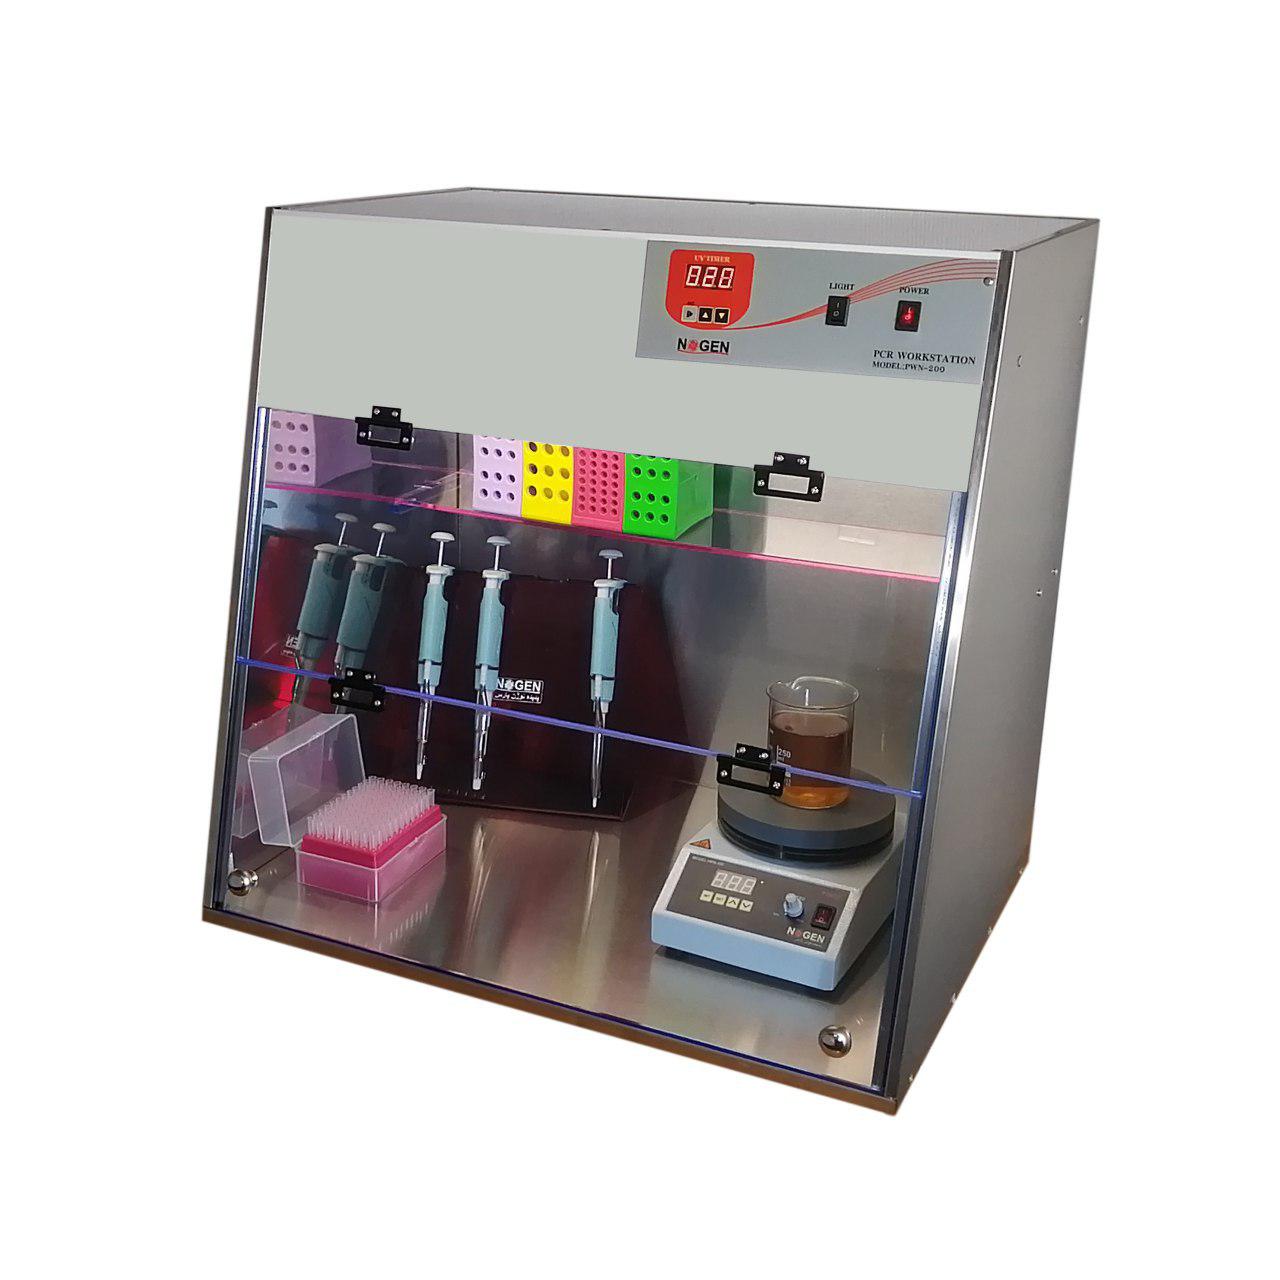 PCR- workstation